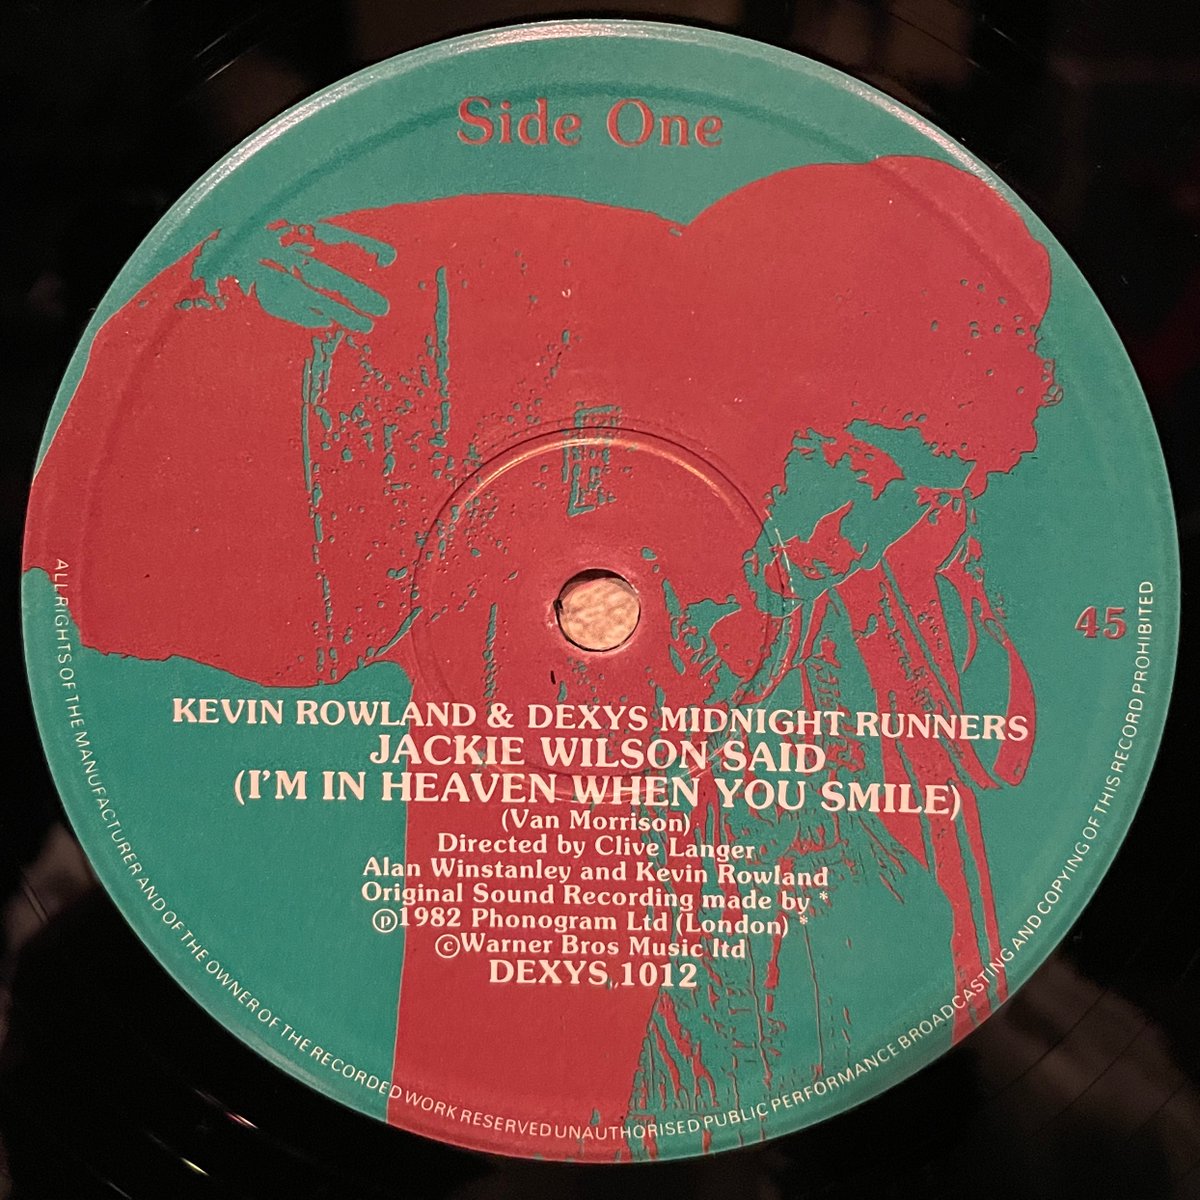 ほな12いこか
KEVIN ROWLAND & DEXYS MIDNIGHT RUNNERS / Jackie Wilson Said (I’m In Heaven When You Smile) [’82 Mercury --- DEXYS 1012]
#DexysMidnightRunners #KevinRowland #JackieWilsonSaid #VanMorrison #vinylbar #musicbar #レコードバー #mhc07042023
youtube.com/watch?v=FLjlrN…